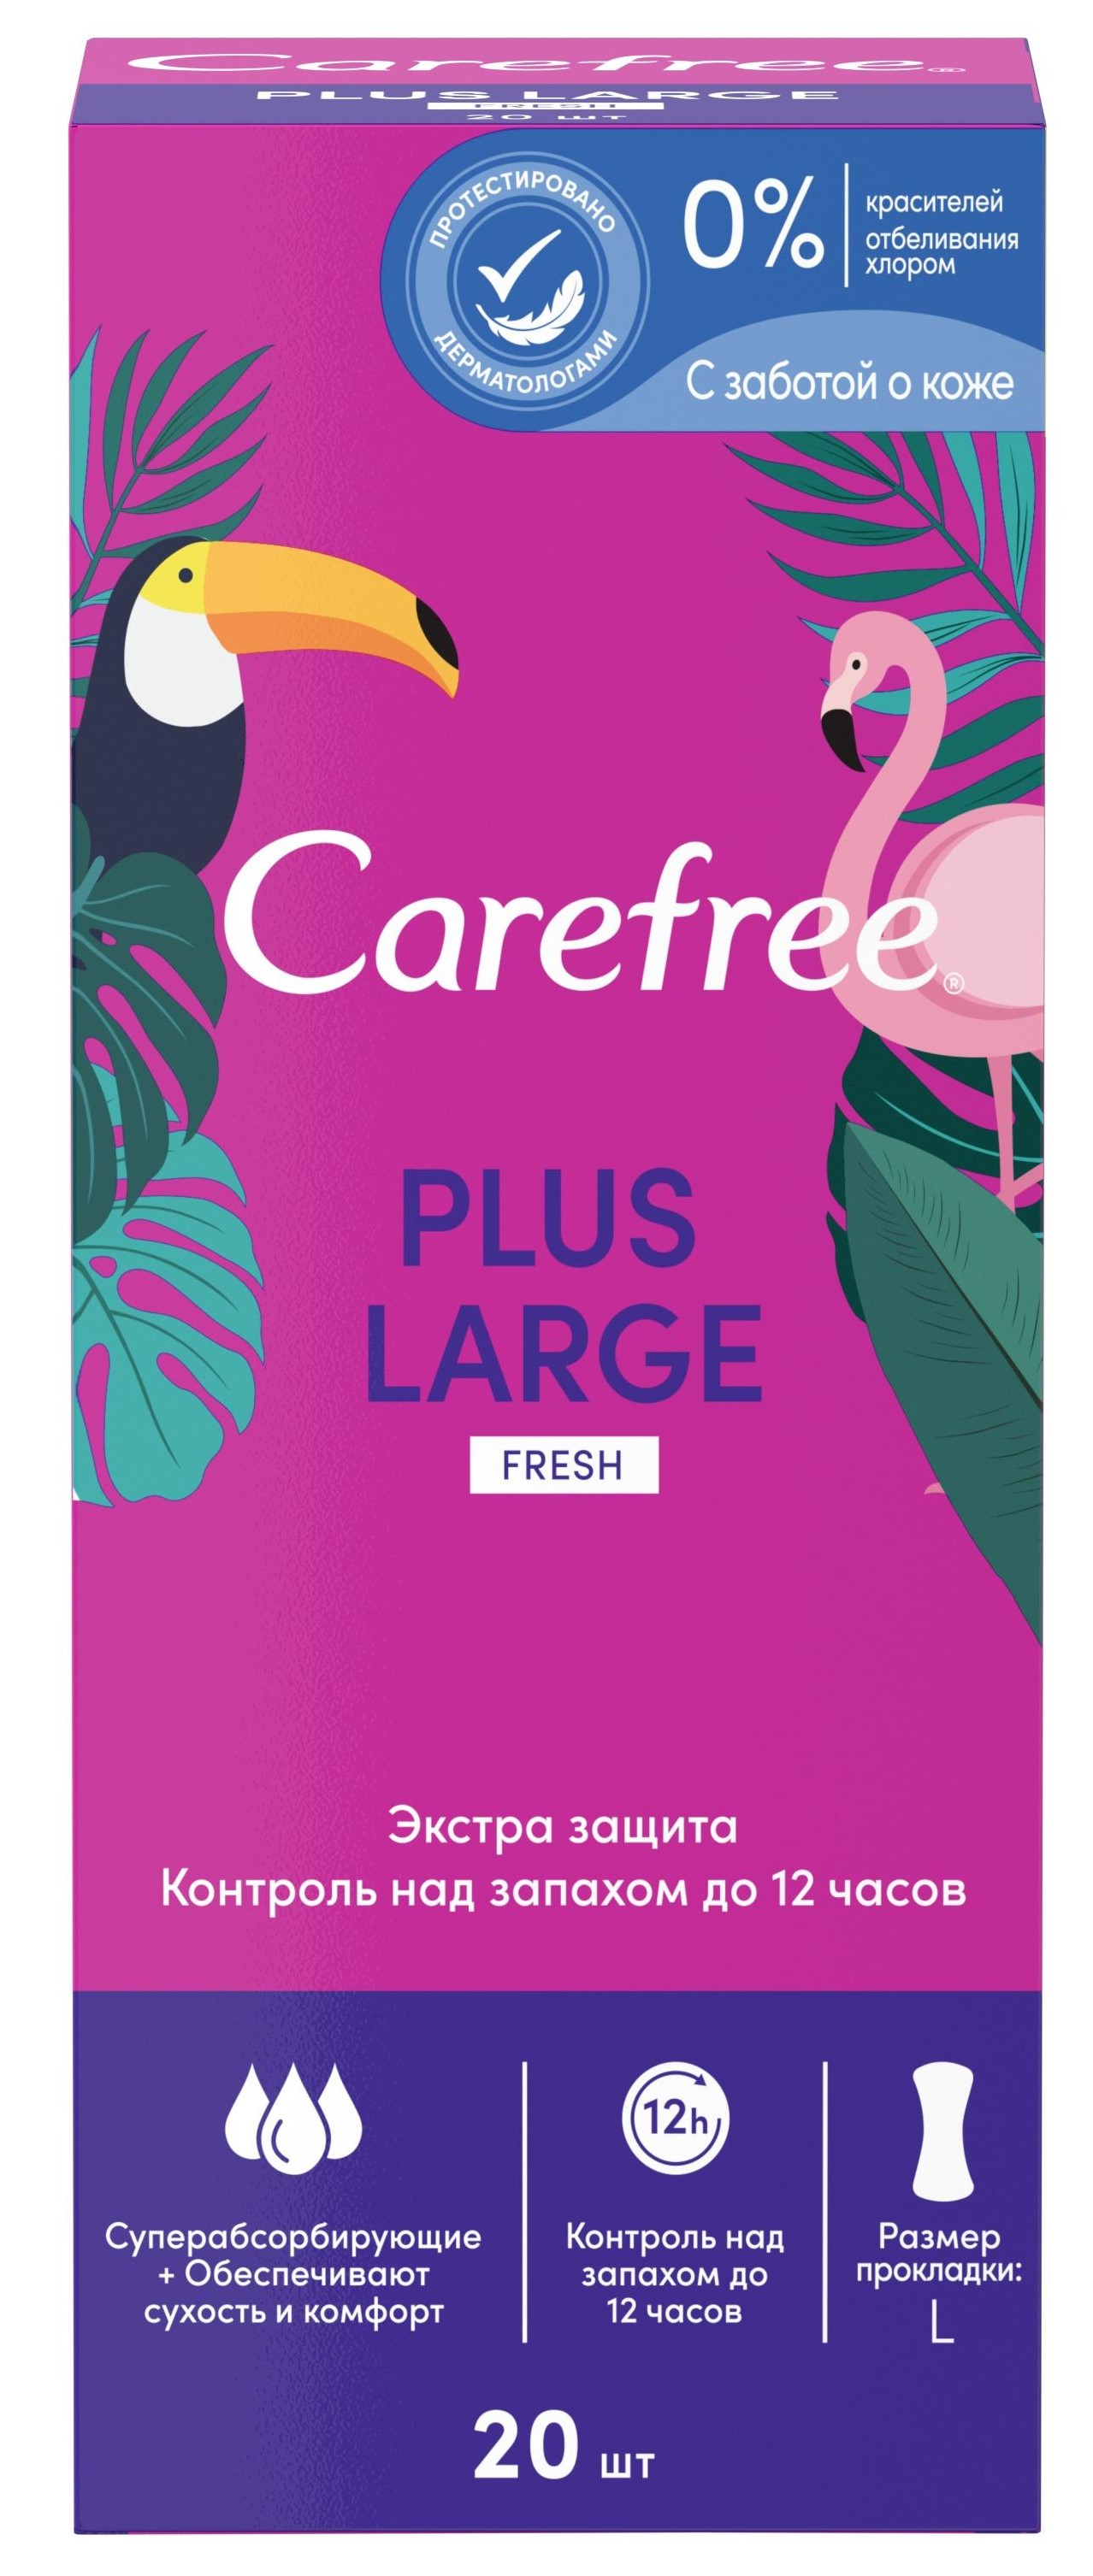 Ежедневные гигиенические прокладки Carefree plus large fresh ароматизированные, 20 шт.